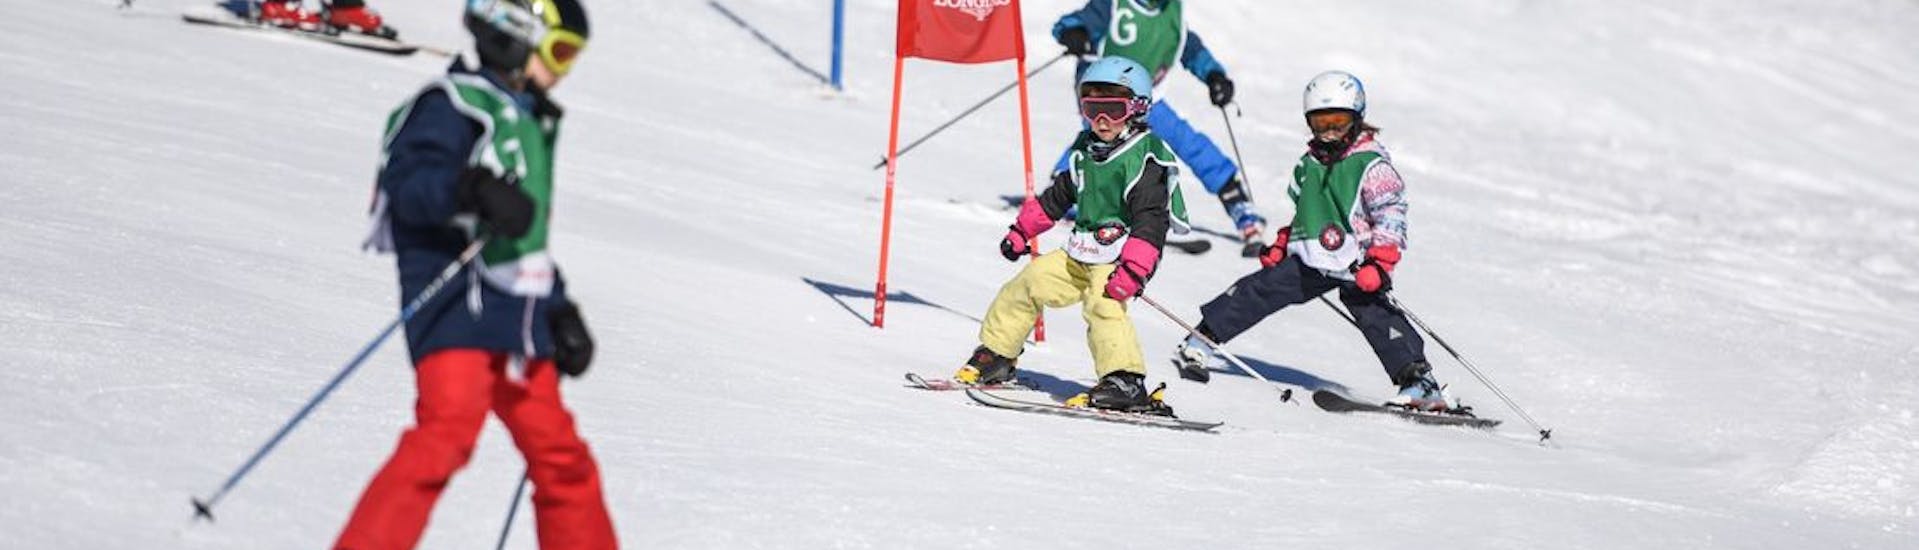 Cours de ski Enfants (5-15 ans) pour Tous niveaux.